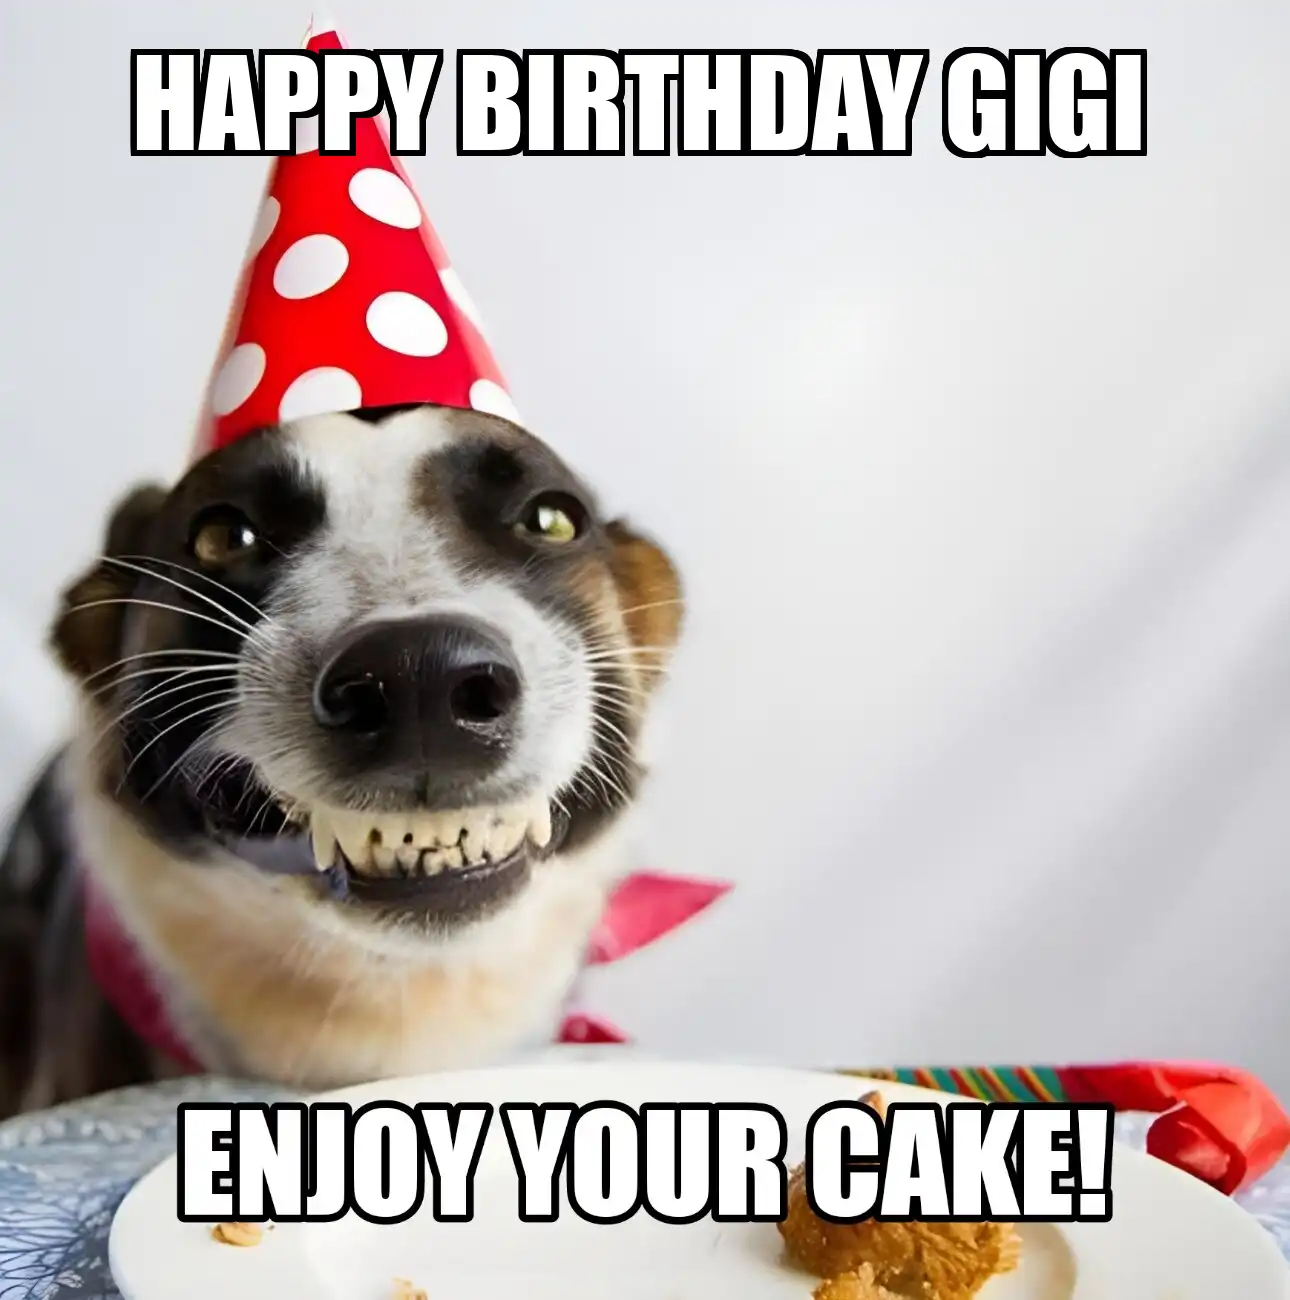 Happy Birthday Gigi Enjoy Your Cake Dog Meme